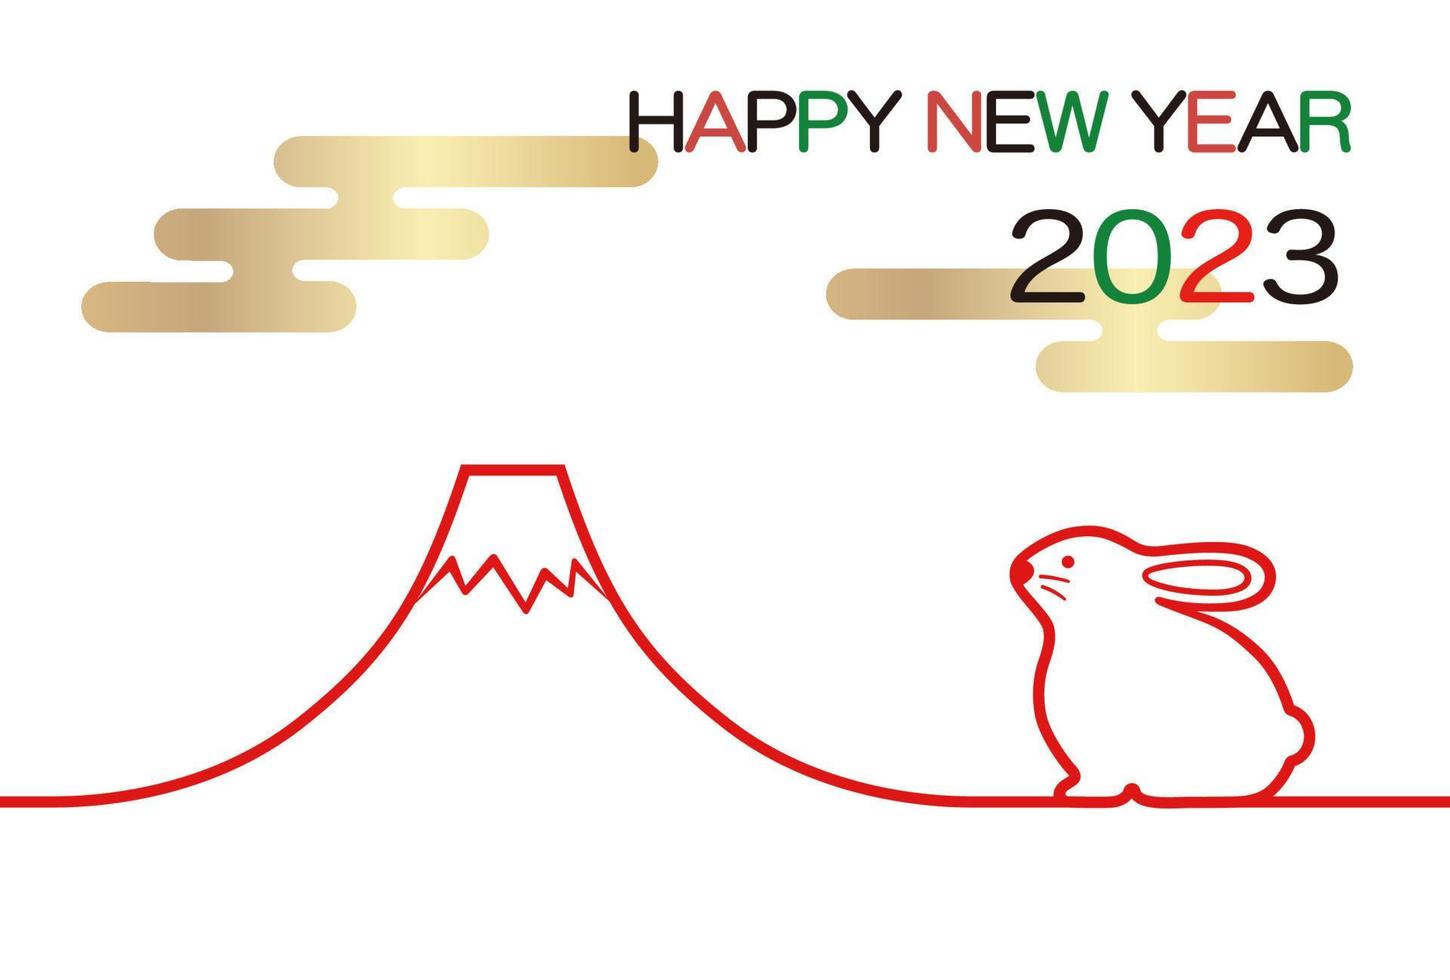 o ano de 2023, o ano do coelho, modelo de cartão de saudação de ano novo com mascote de coelho e mt. fuji. vetor